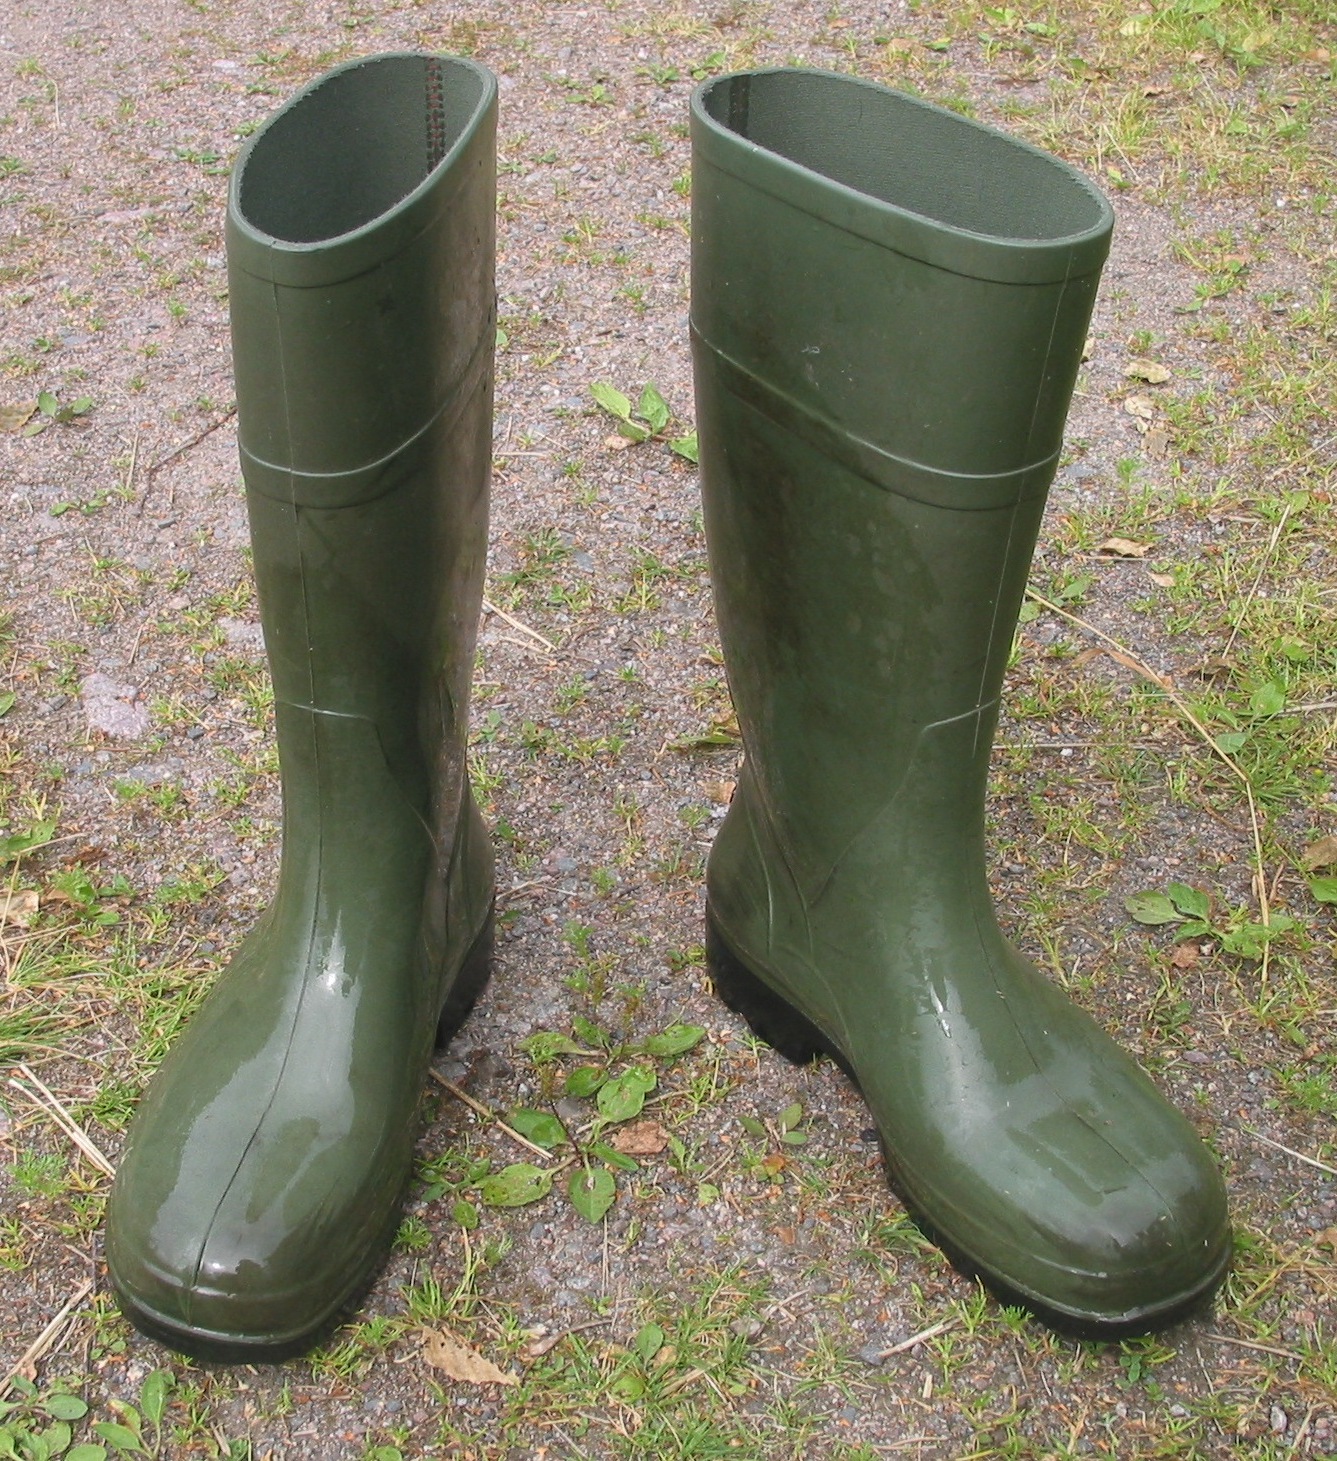 Modern Boots